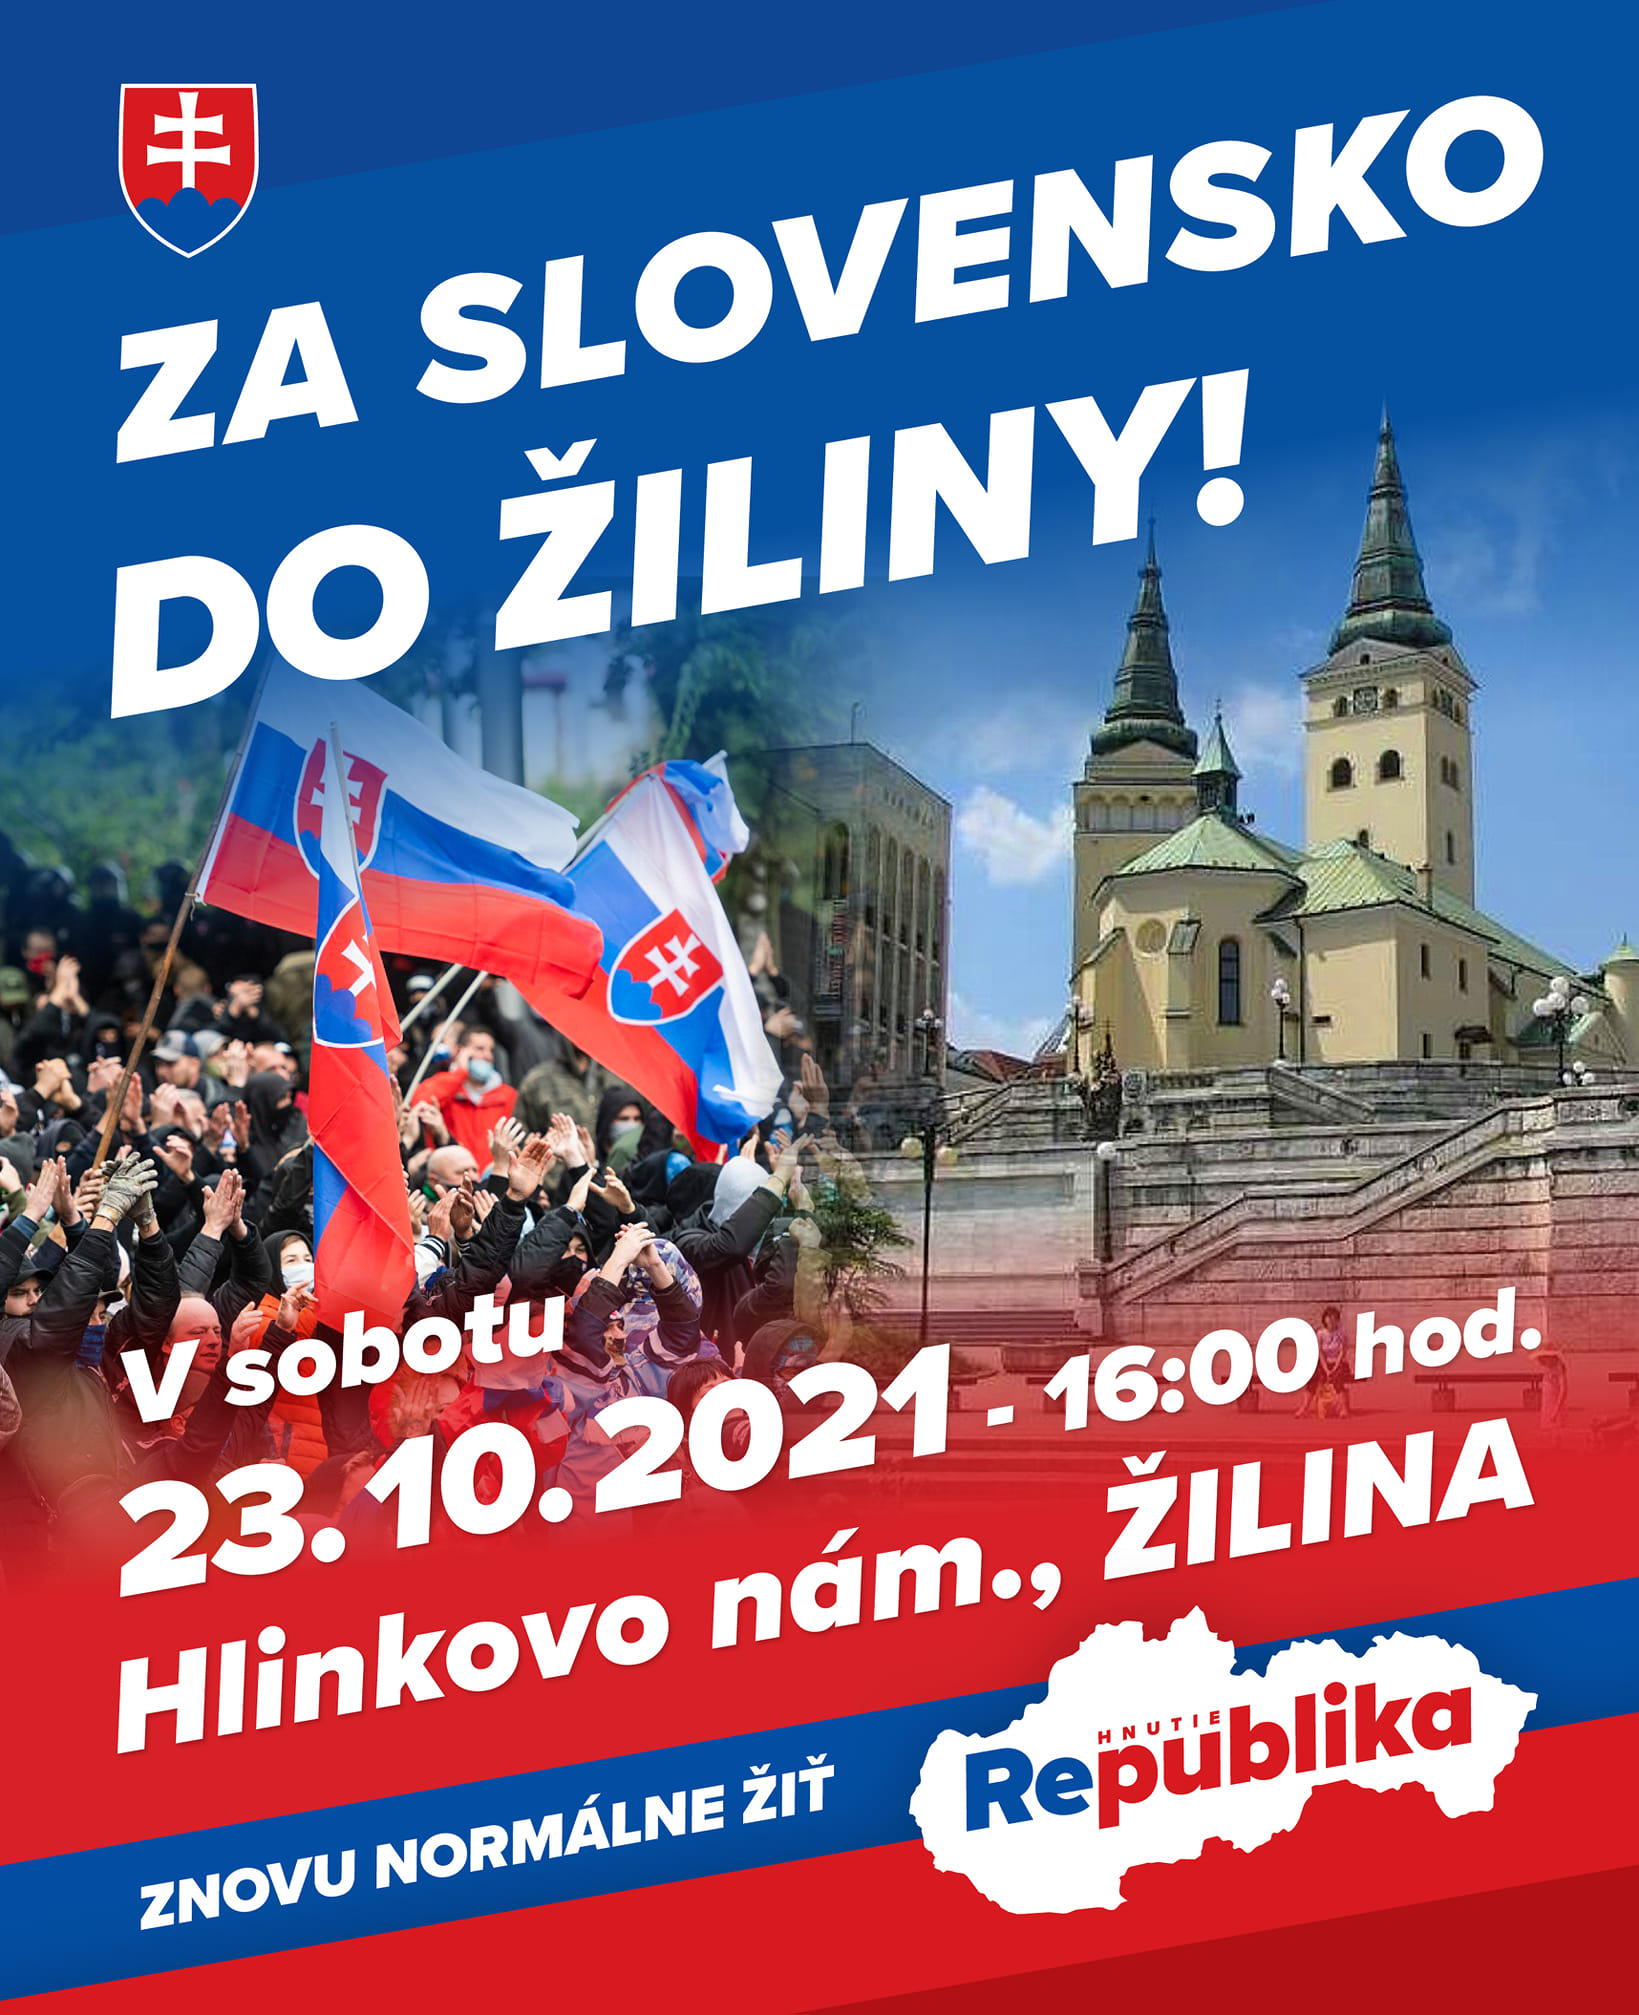 Veľký protest v Žiline už 23.10.2021 o 16:00